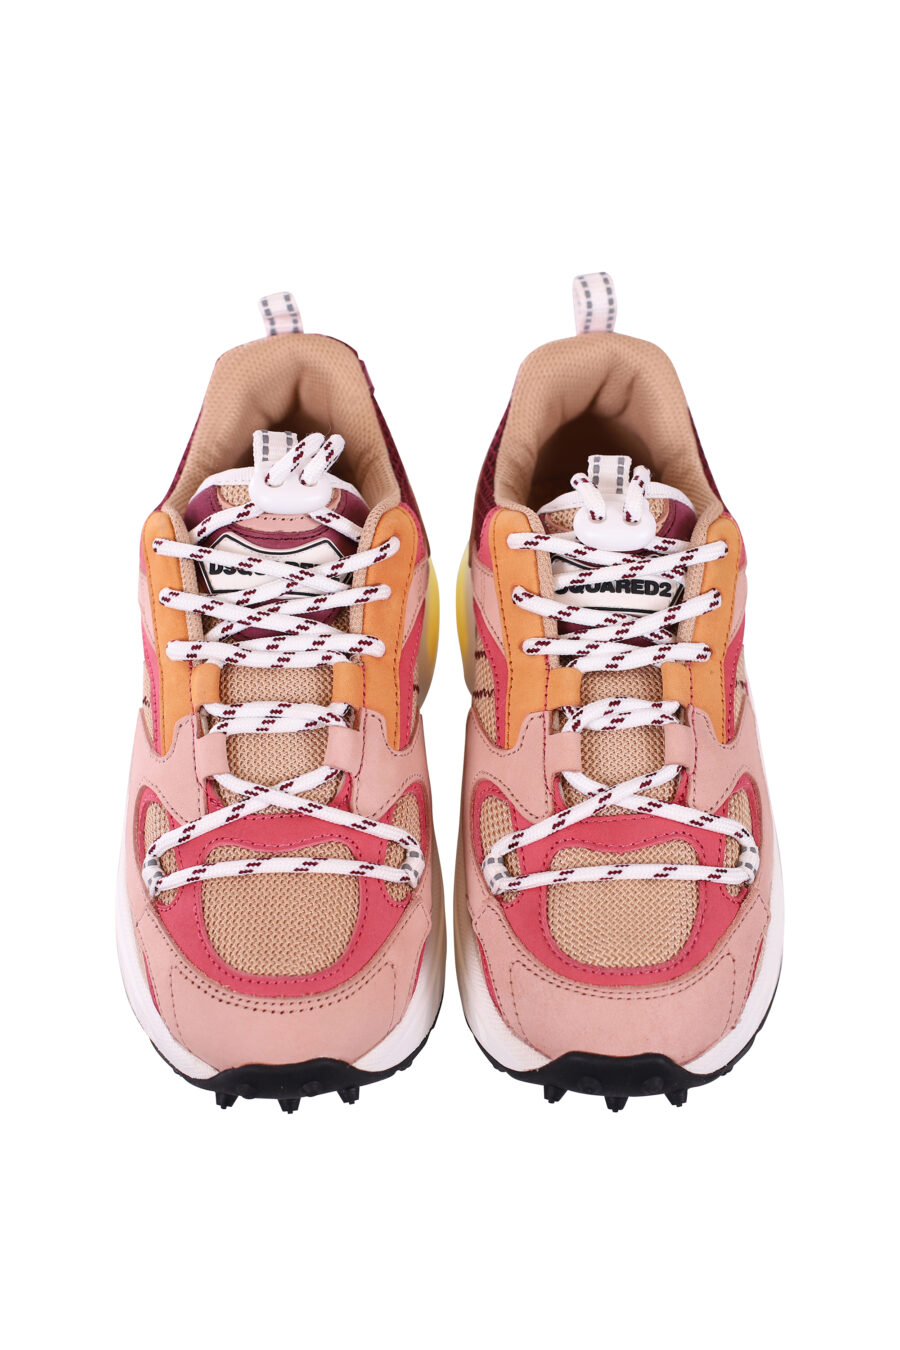 Zapatillas multicolor rosa con camara de aire amarilla - IMG 5684